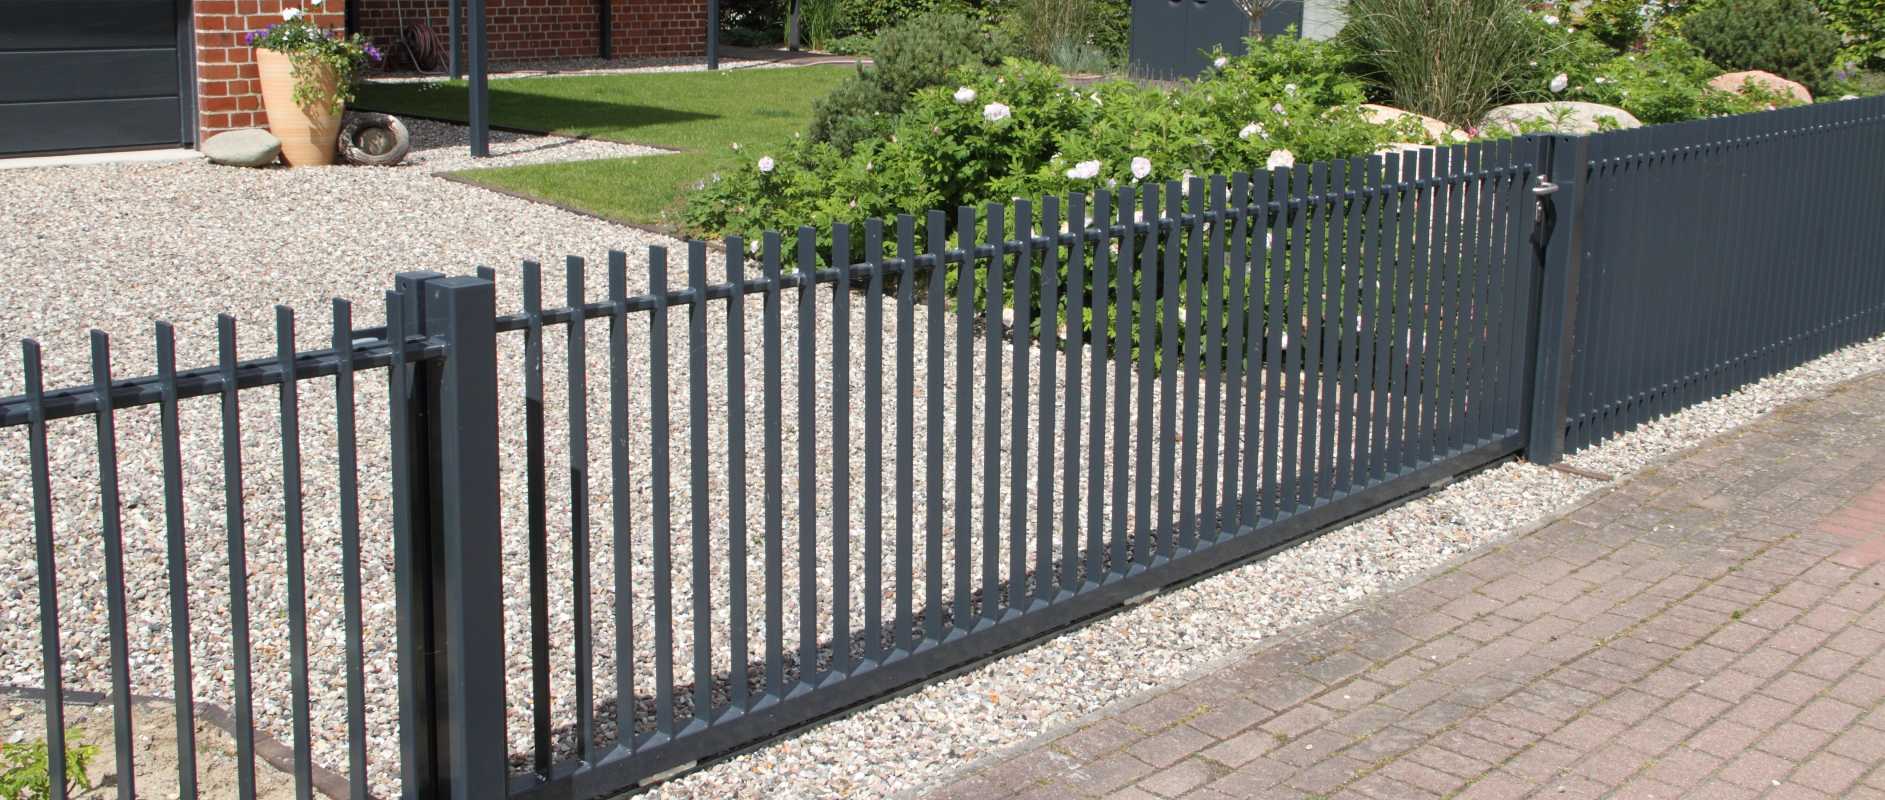 باڑ کے مواد کے لیے گائیڈ: اپنے صحن کے لیے بہترین باڑ کا انتخاب کیسے کریں۔